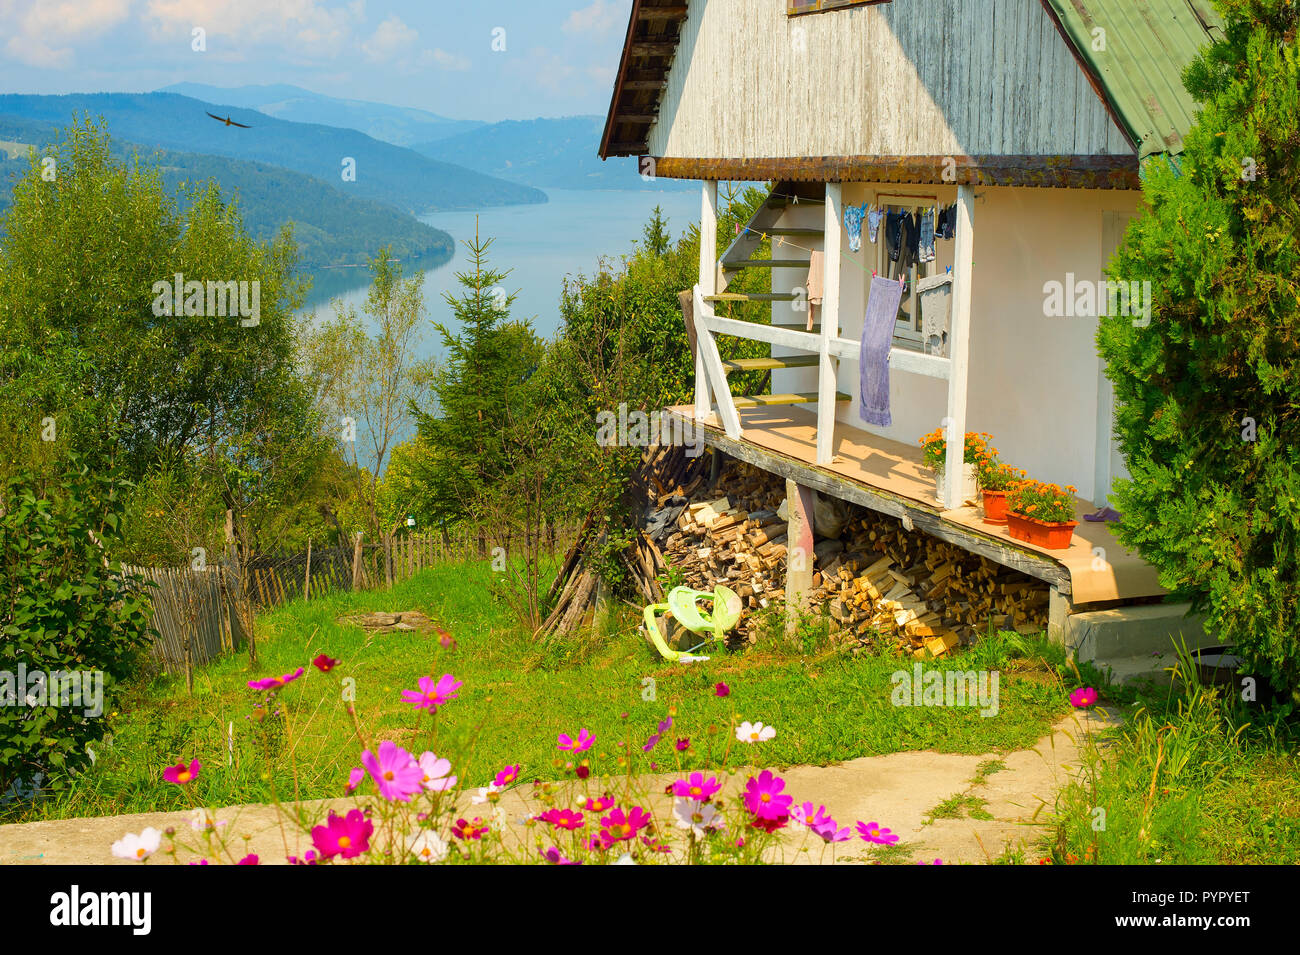 Scène avec maison roumaine typique en vert jardin fleuri par Muntelui mountain lake, Izvorul Muntelui, Neamt, Roumanie Banque D'Images